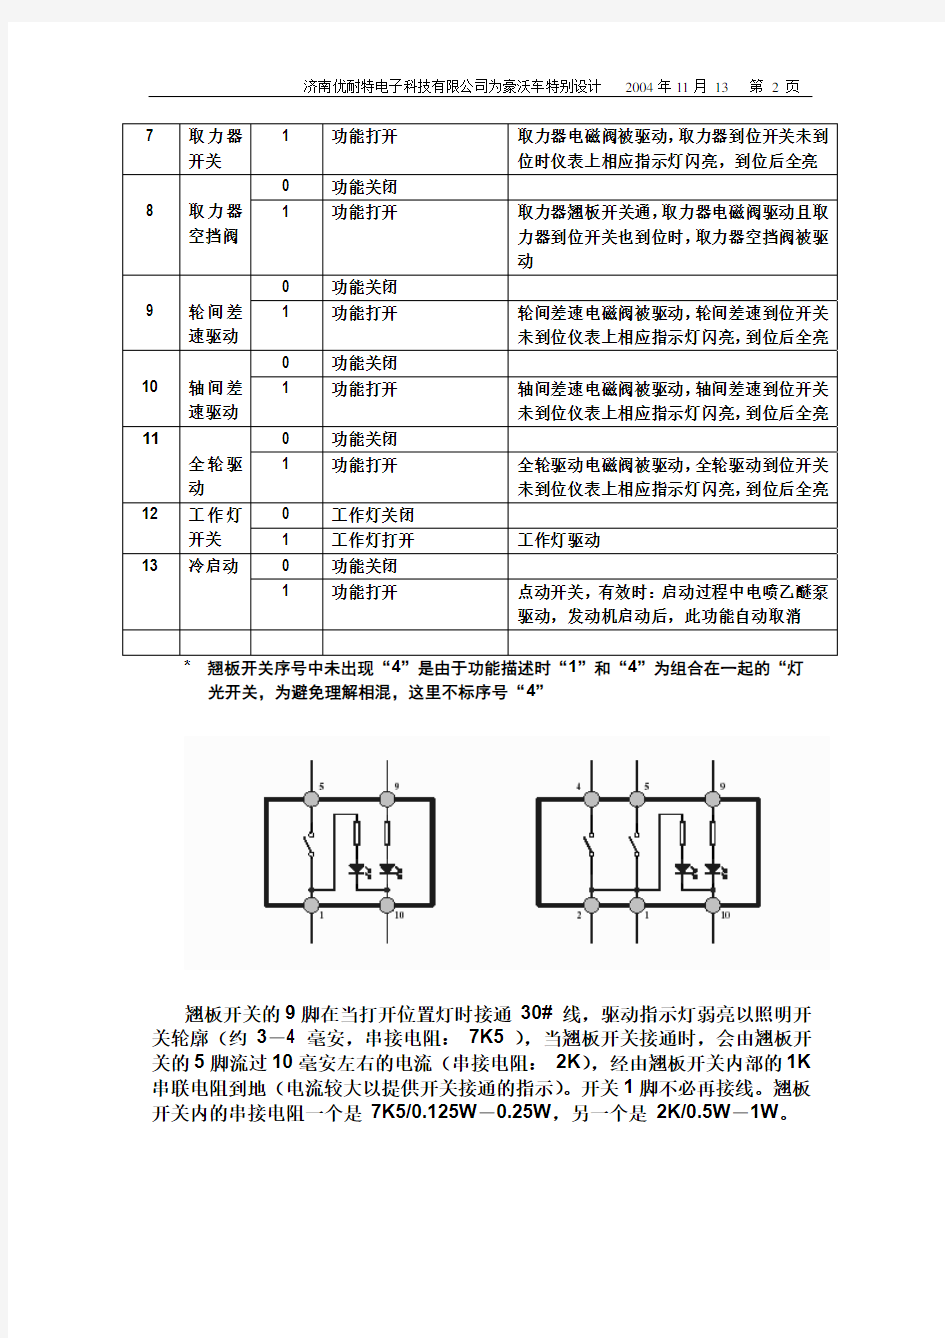 豪沃产品技术规格及使用说明_1113